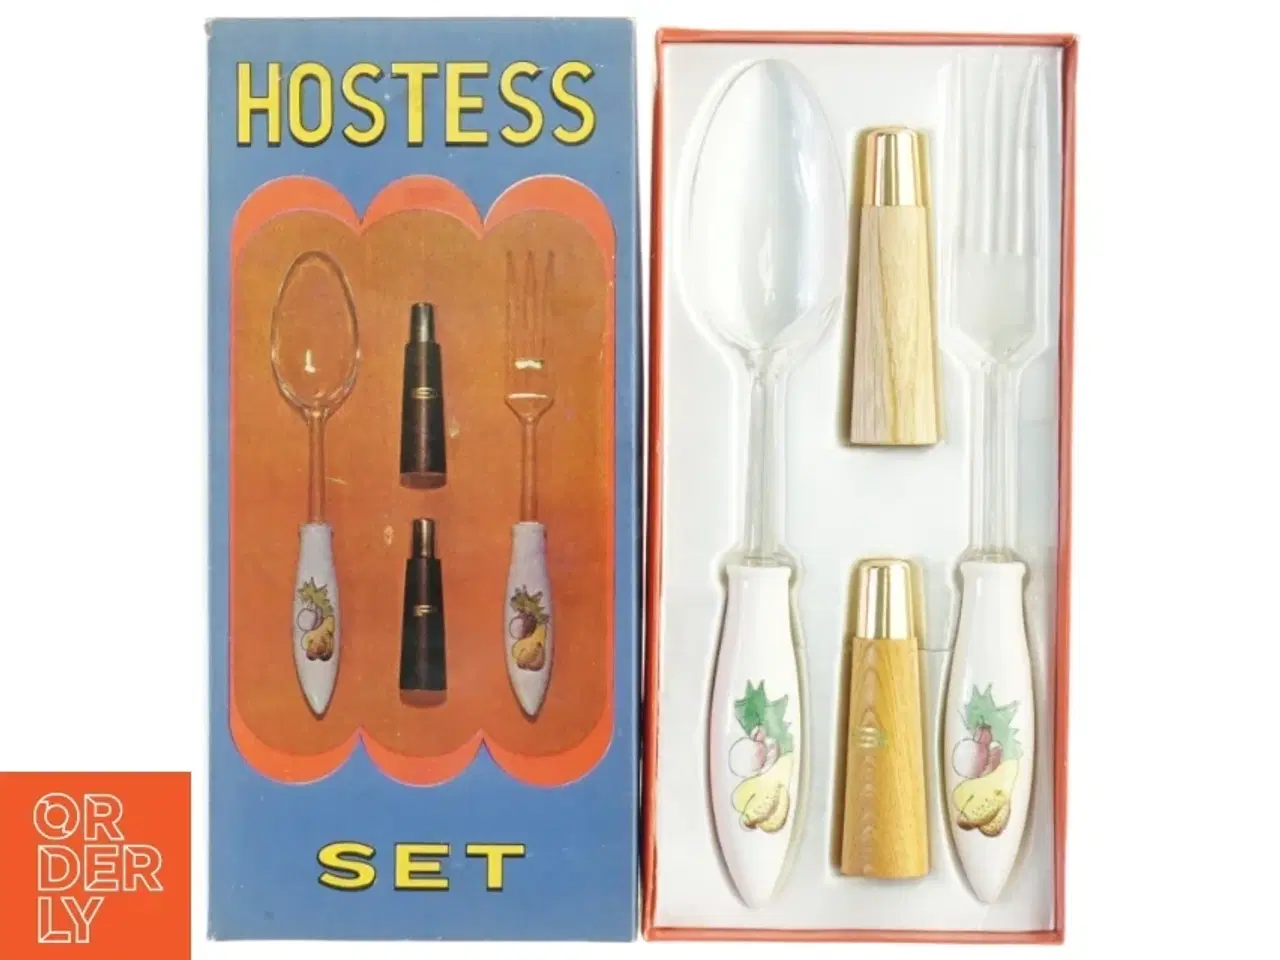 Billede 1 - Vintage 'Hostess' serveringssæt fra Hostess